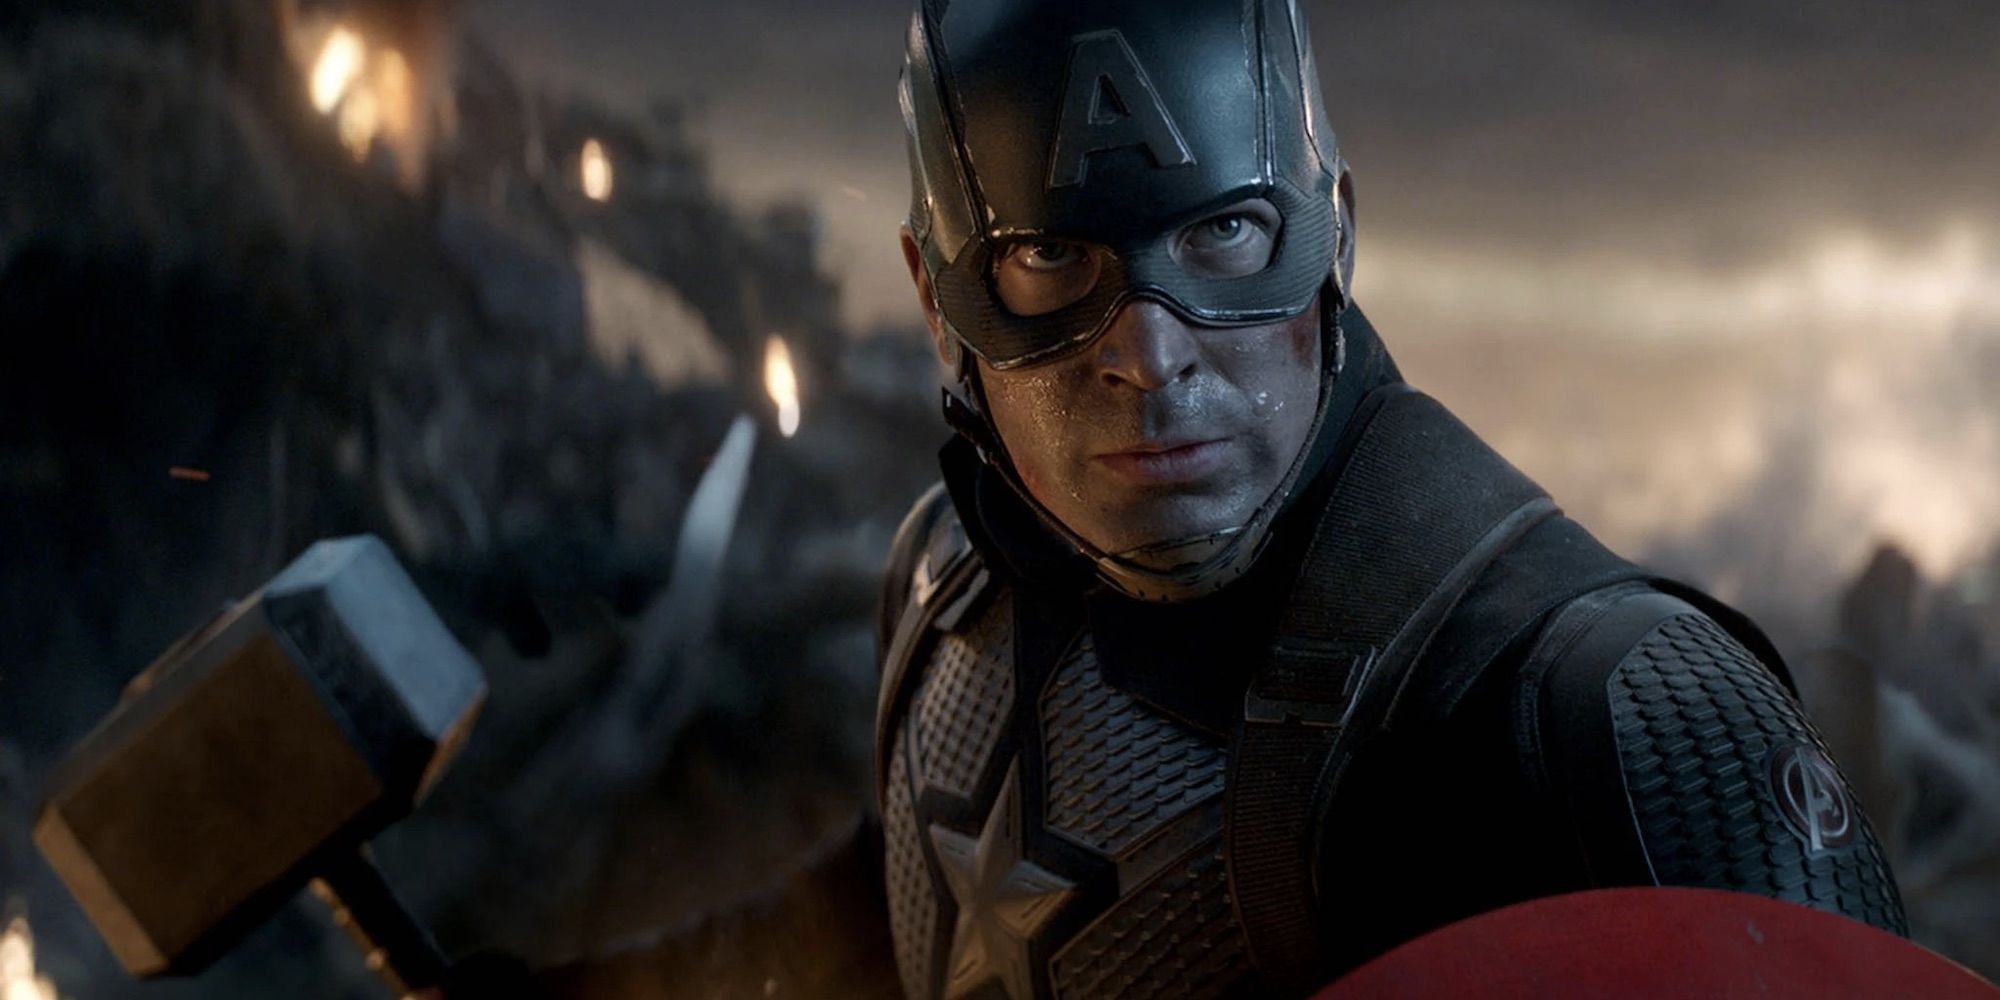 Captain America (Chris Evans) wields Mjolnir in Avengers: Endgame